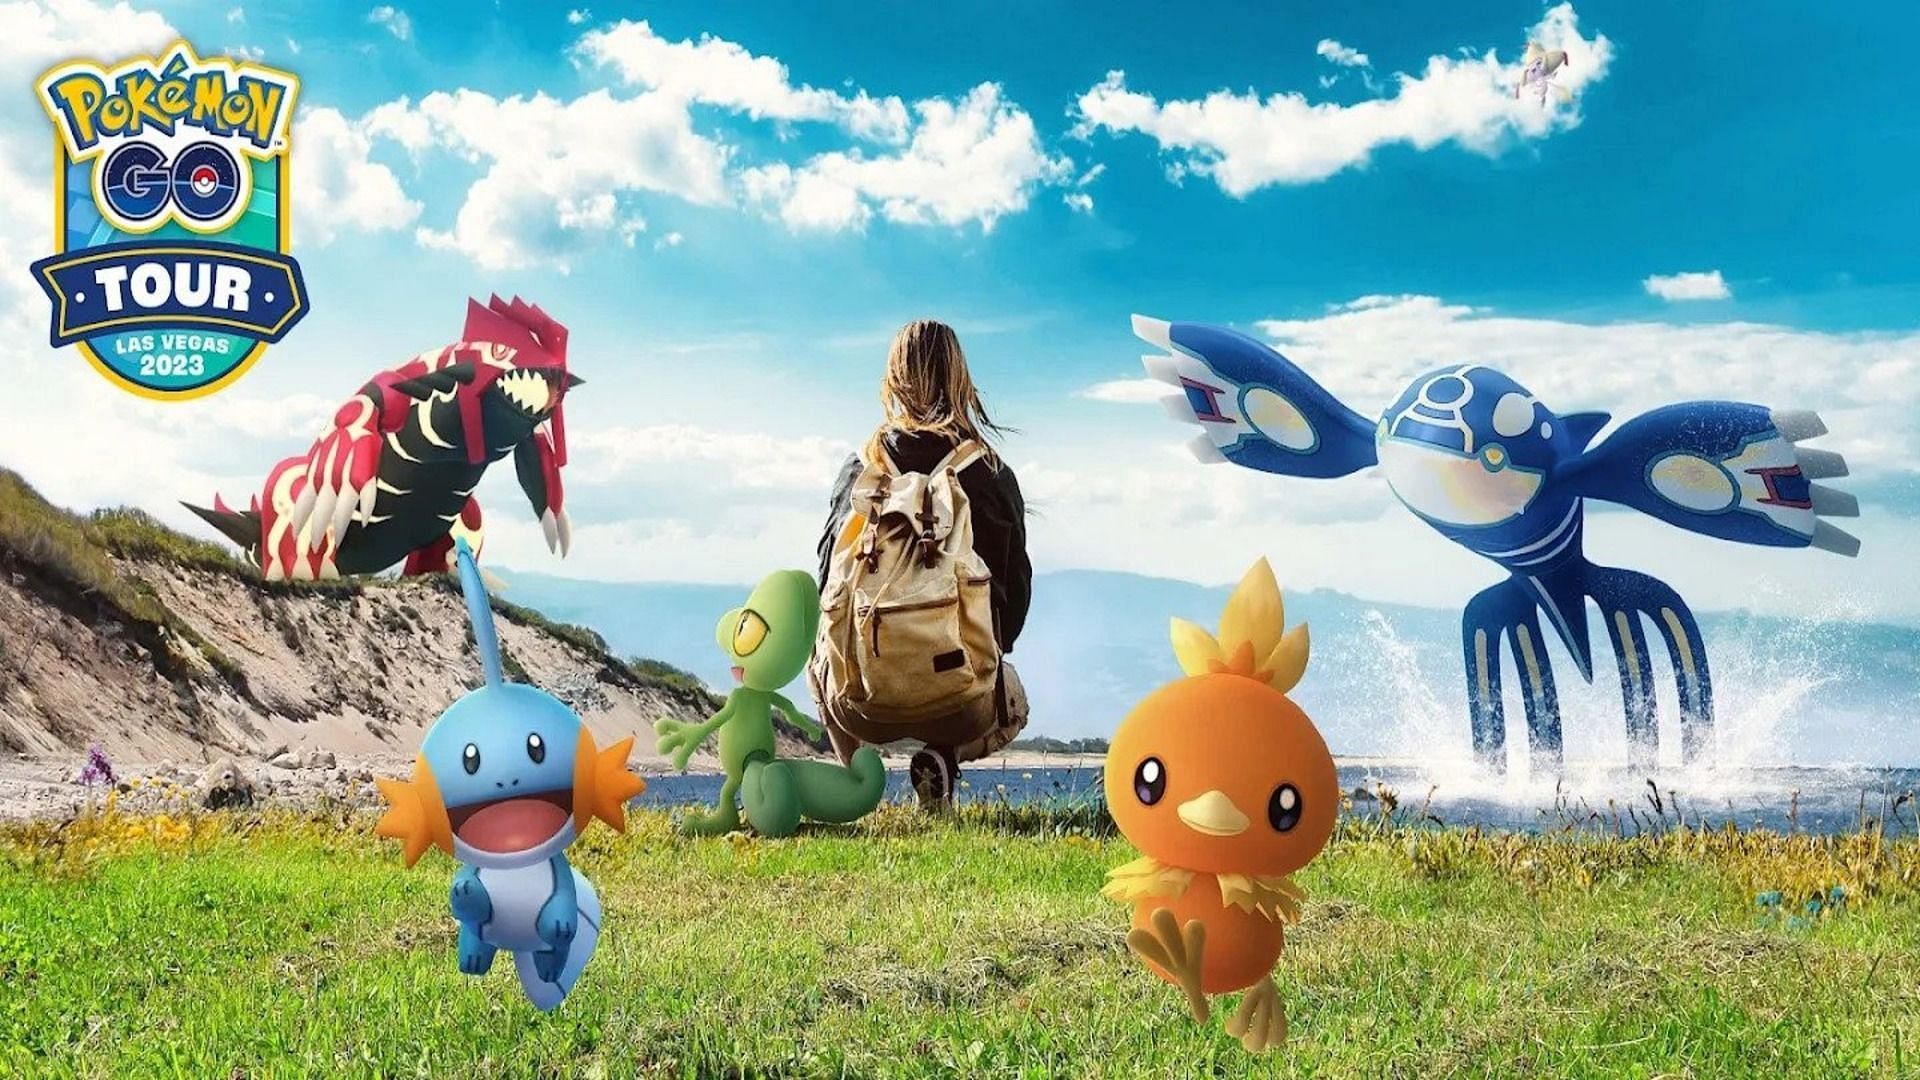 Official artwork for the next Pokemon GO Tour event (Image via Niantic)